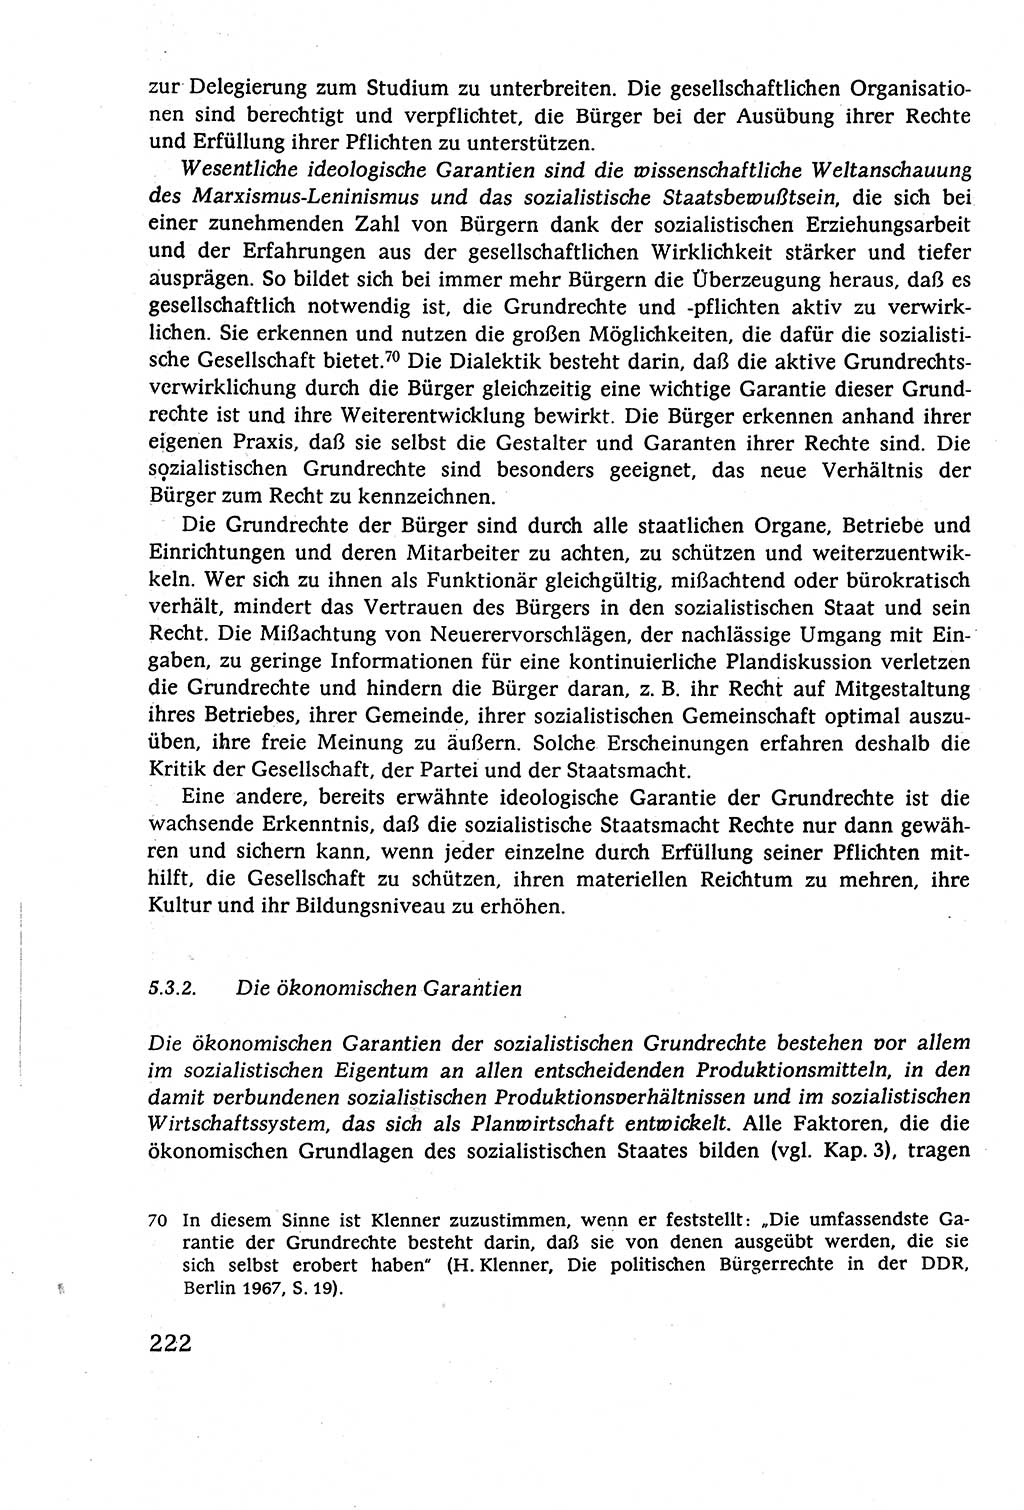 Staatsrecht der DDR (Deutsche Demokratische Republik), Lehrbuch 1977, Seite 222 (St.-R. DDR Lb. 1977, S. 222)